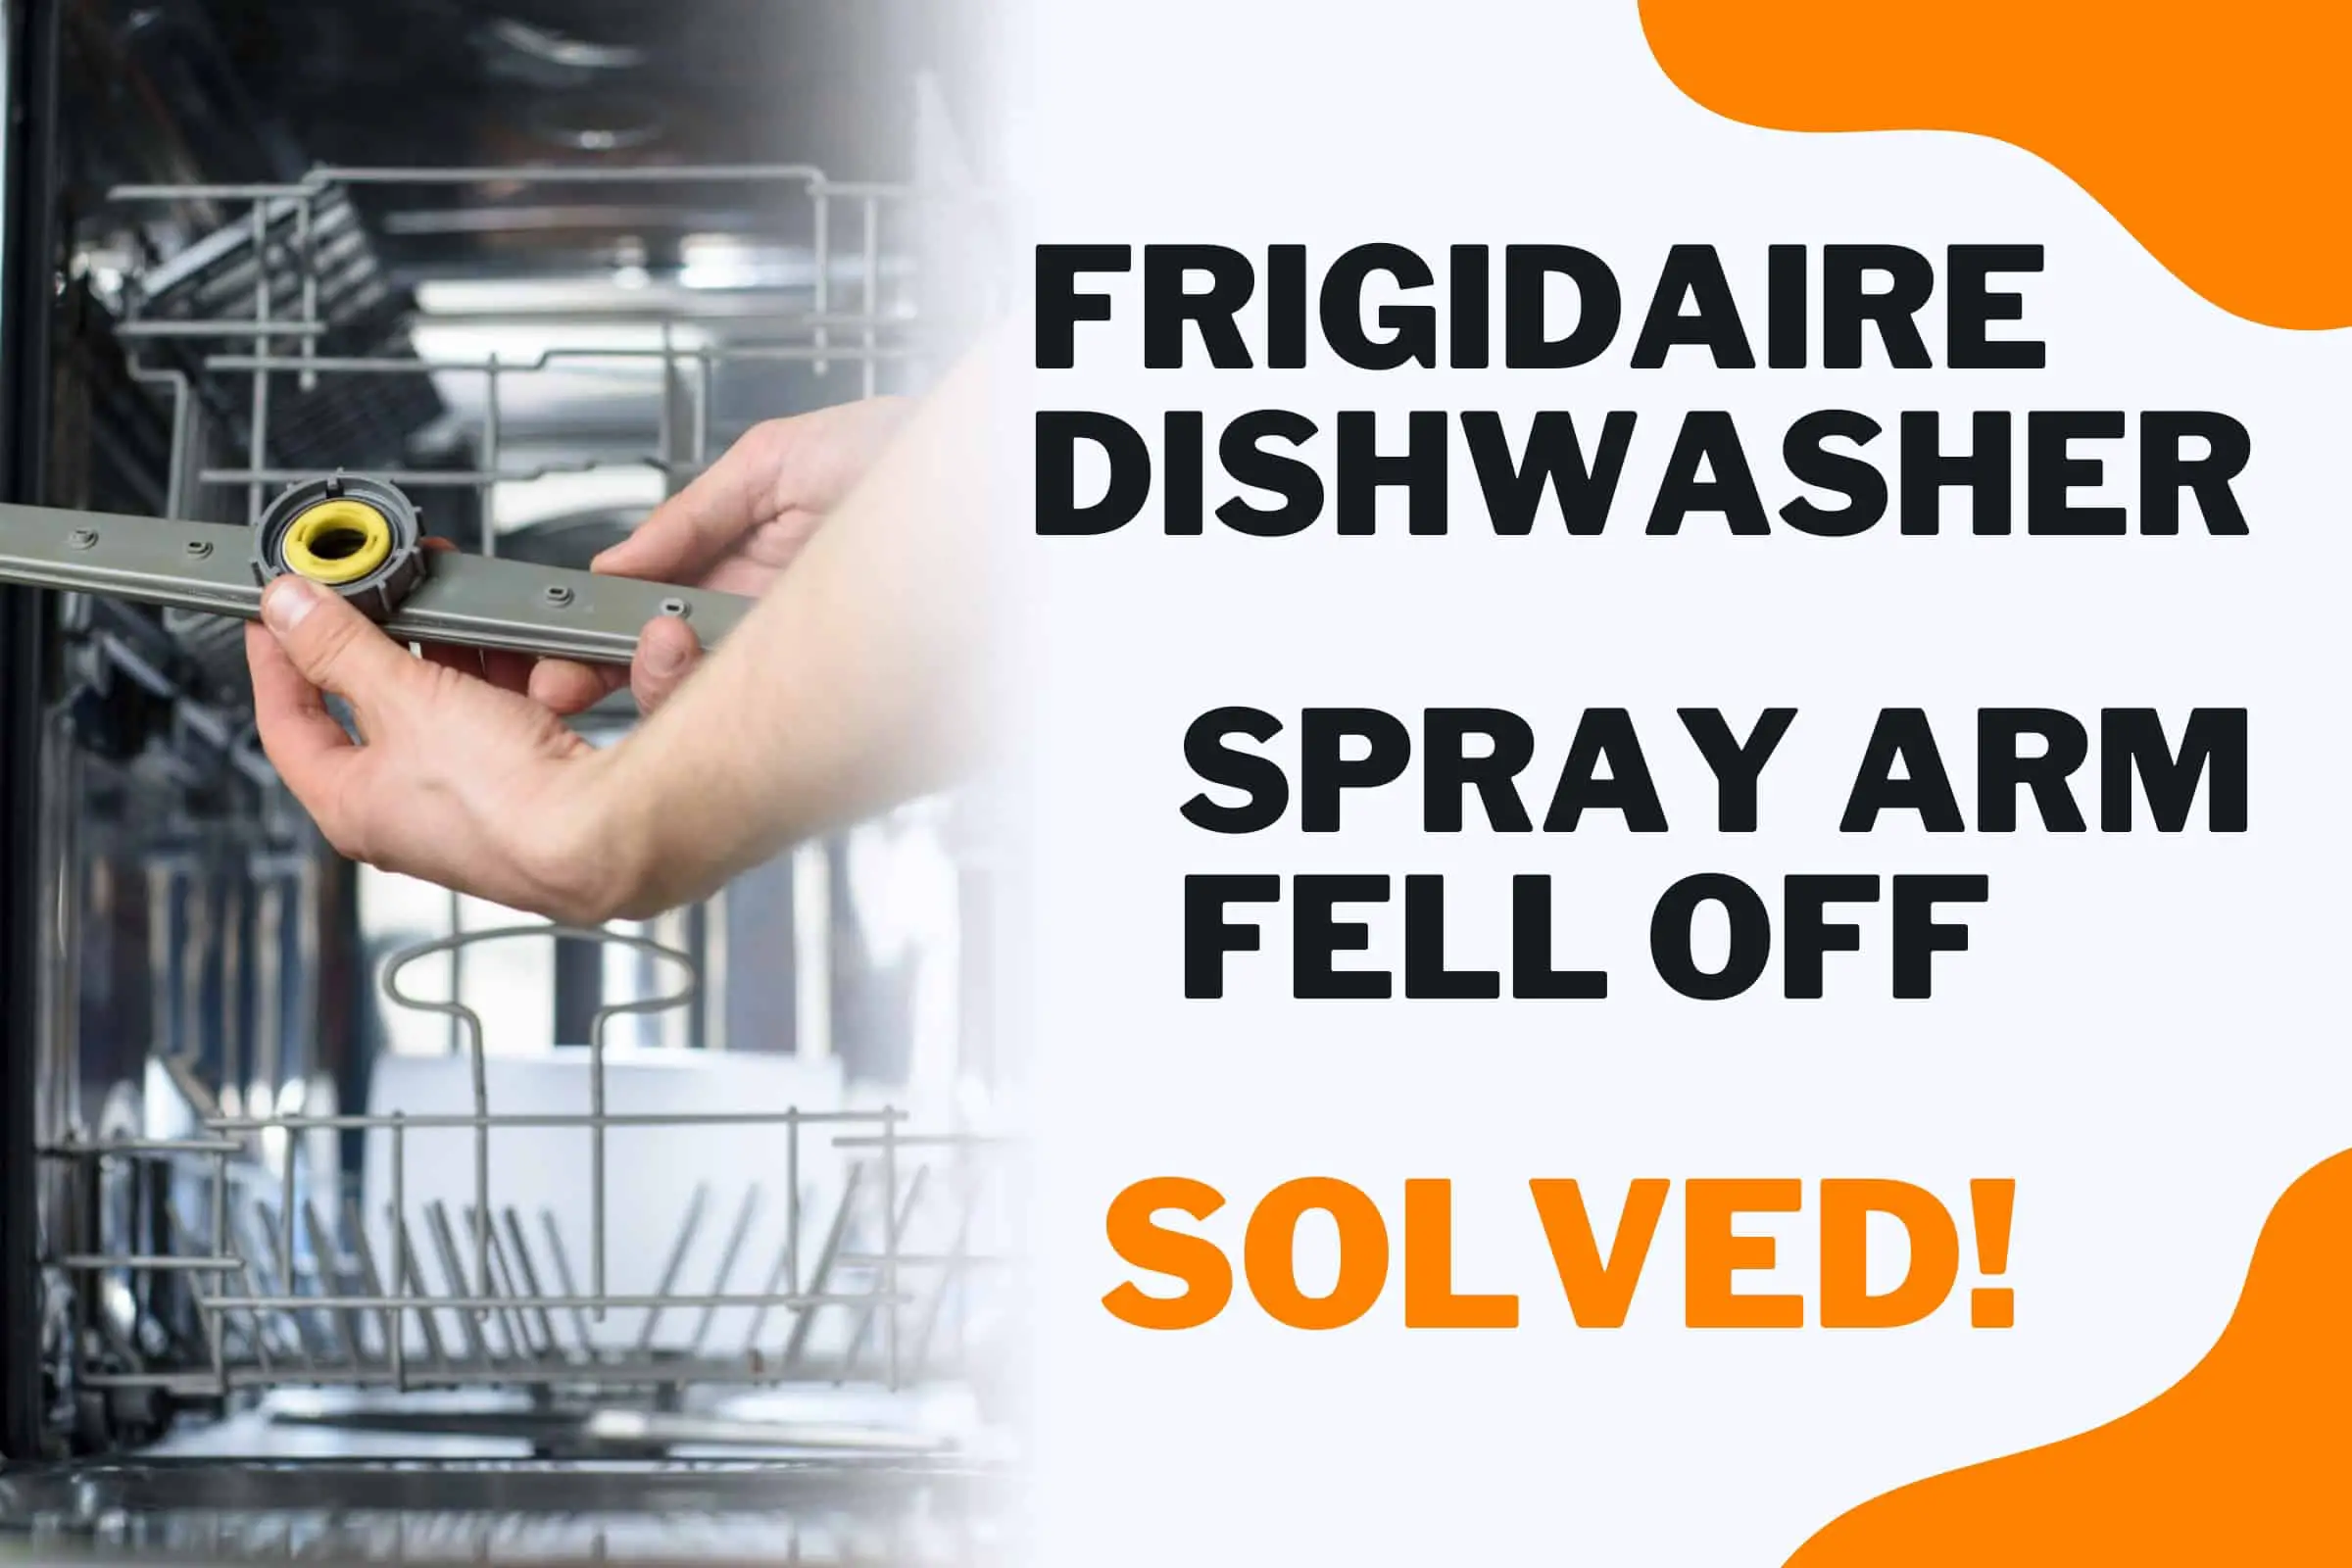 Frigidaire dishwasher spray Arm Fell Off